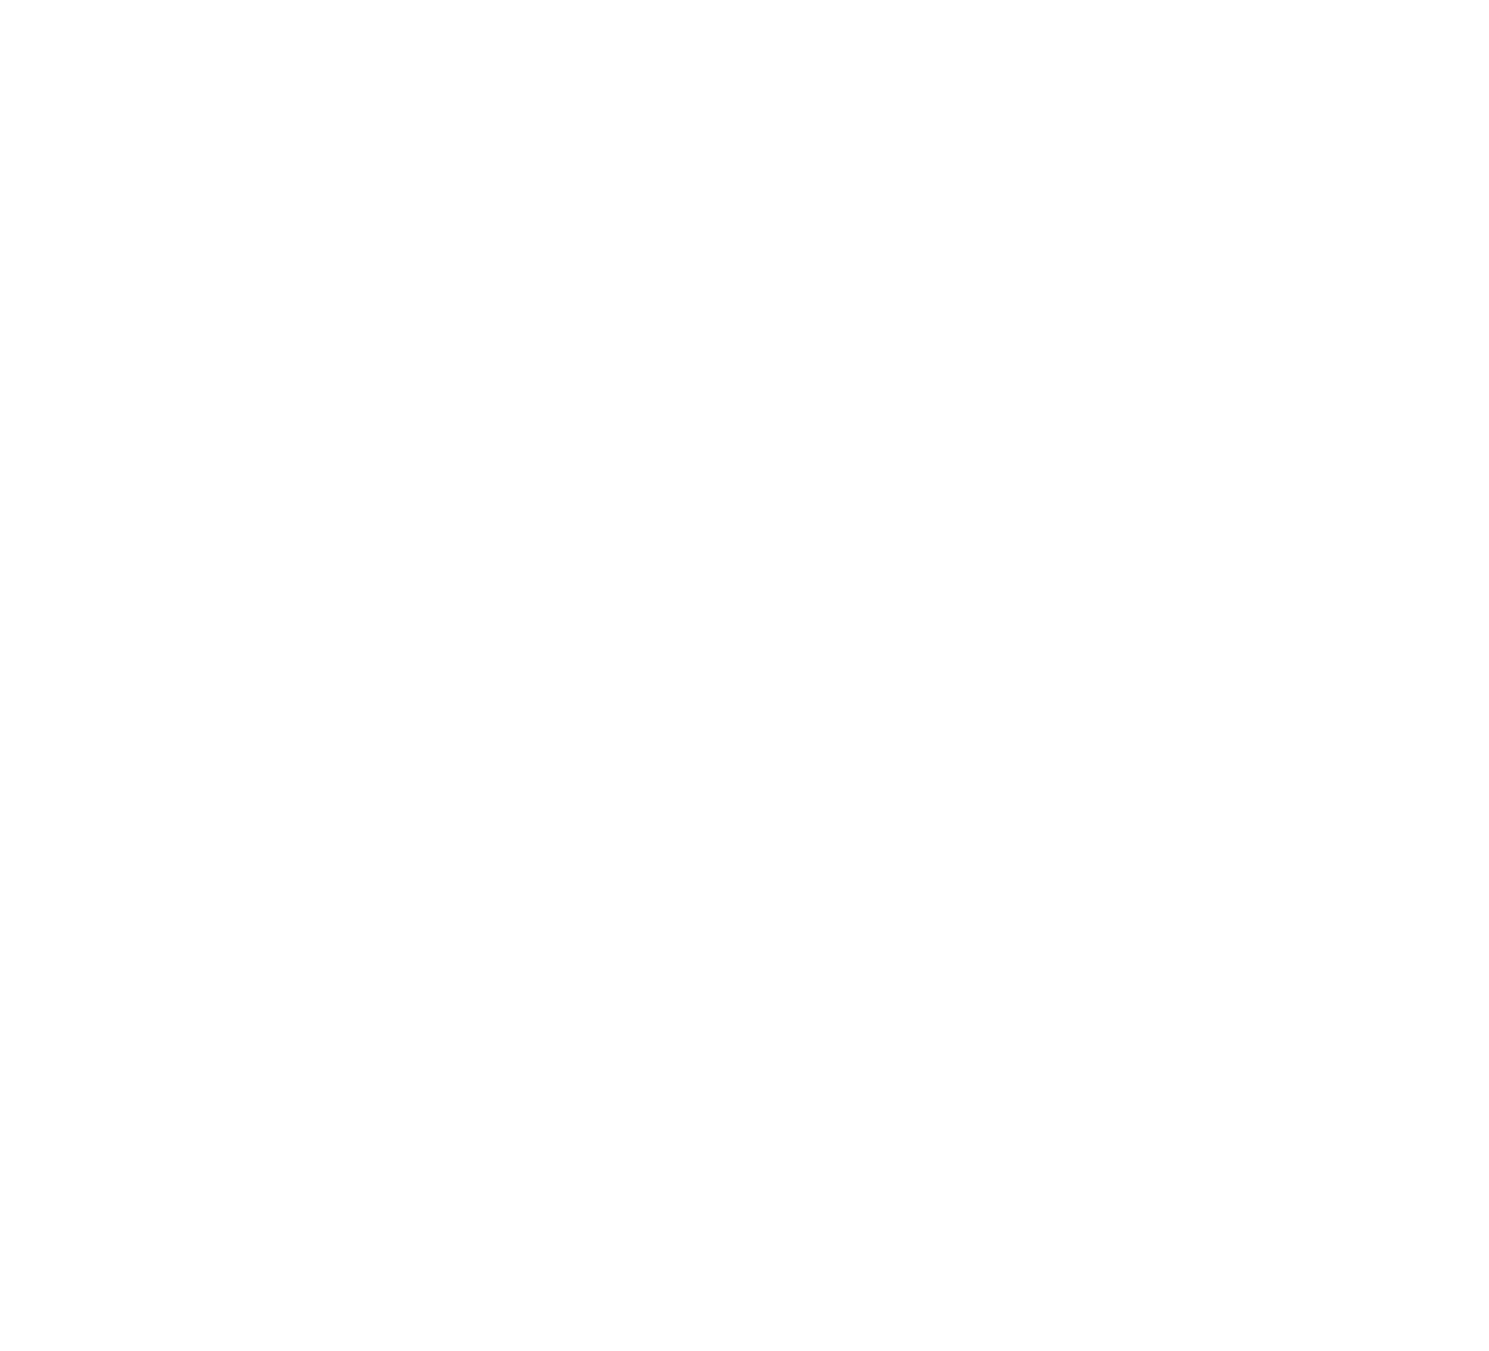 Sri Trang Gloves logo large for dark backgrounds (transparent PNG)